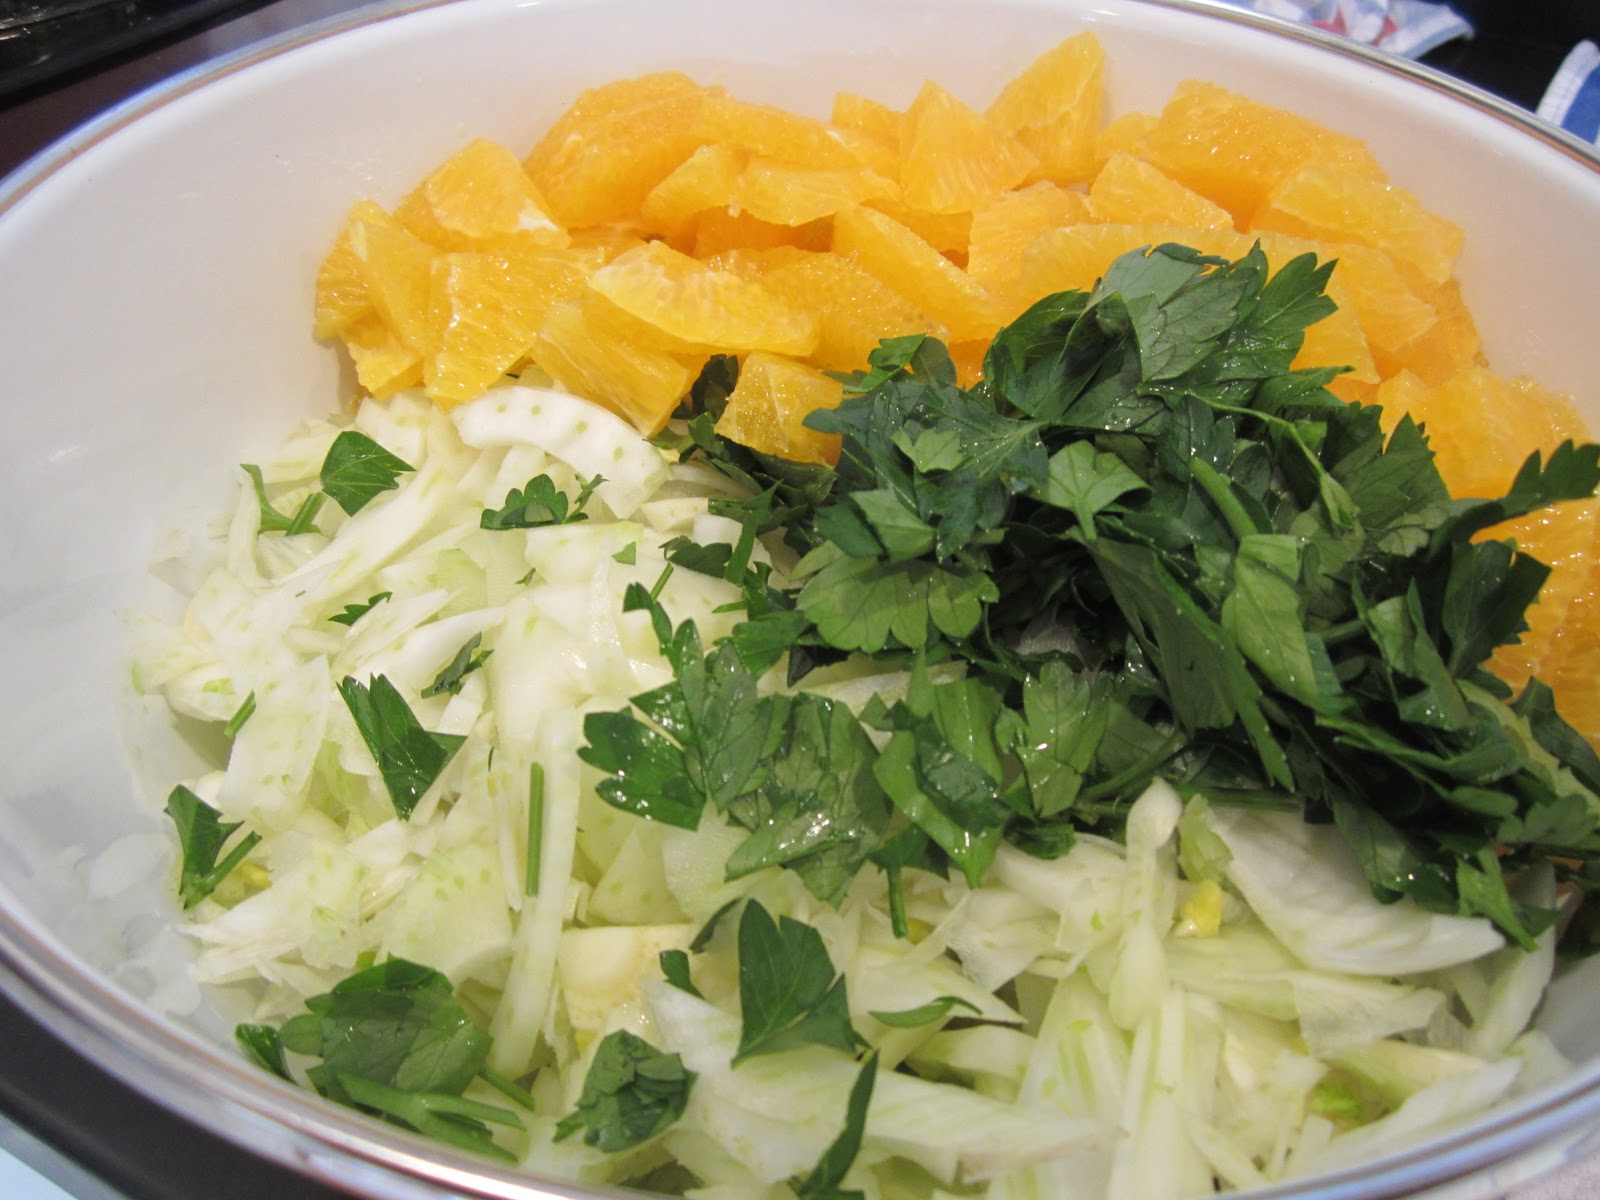 The Full Plate Blog: orange-fennel salad with lemon vinaigrette